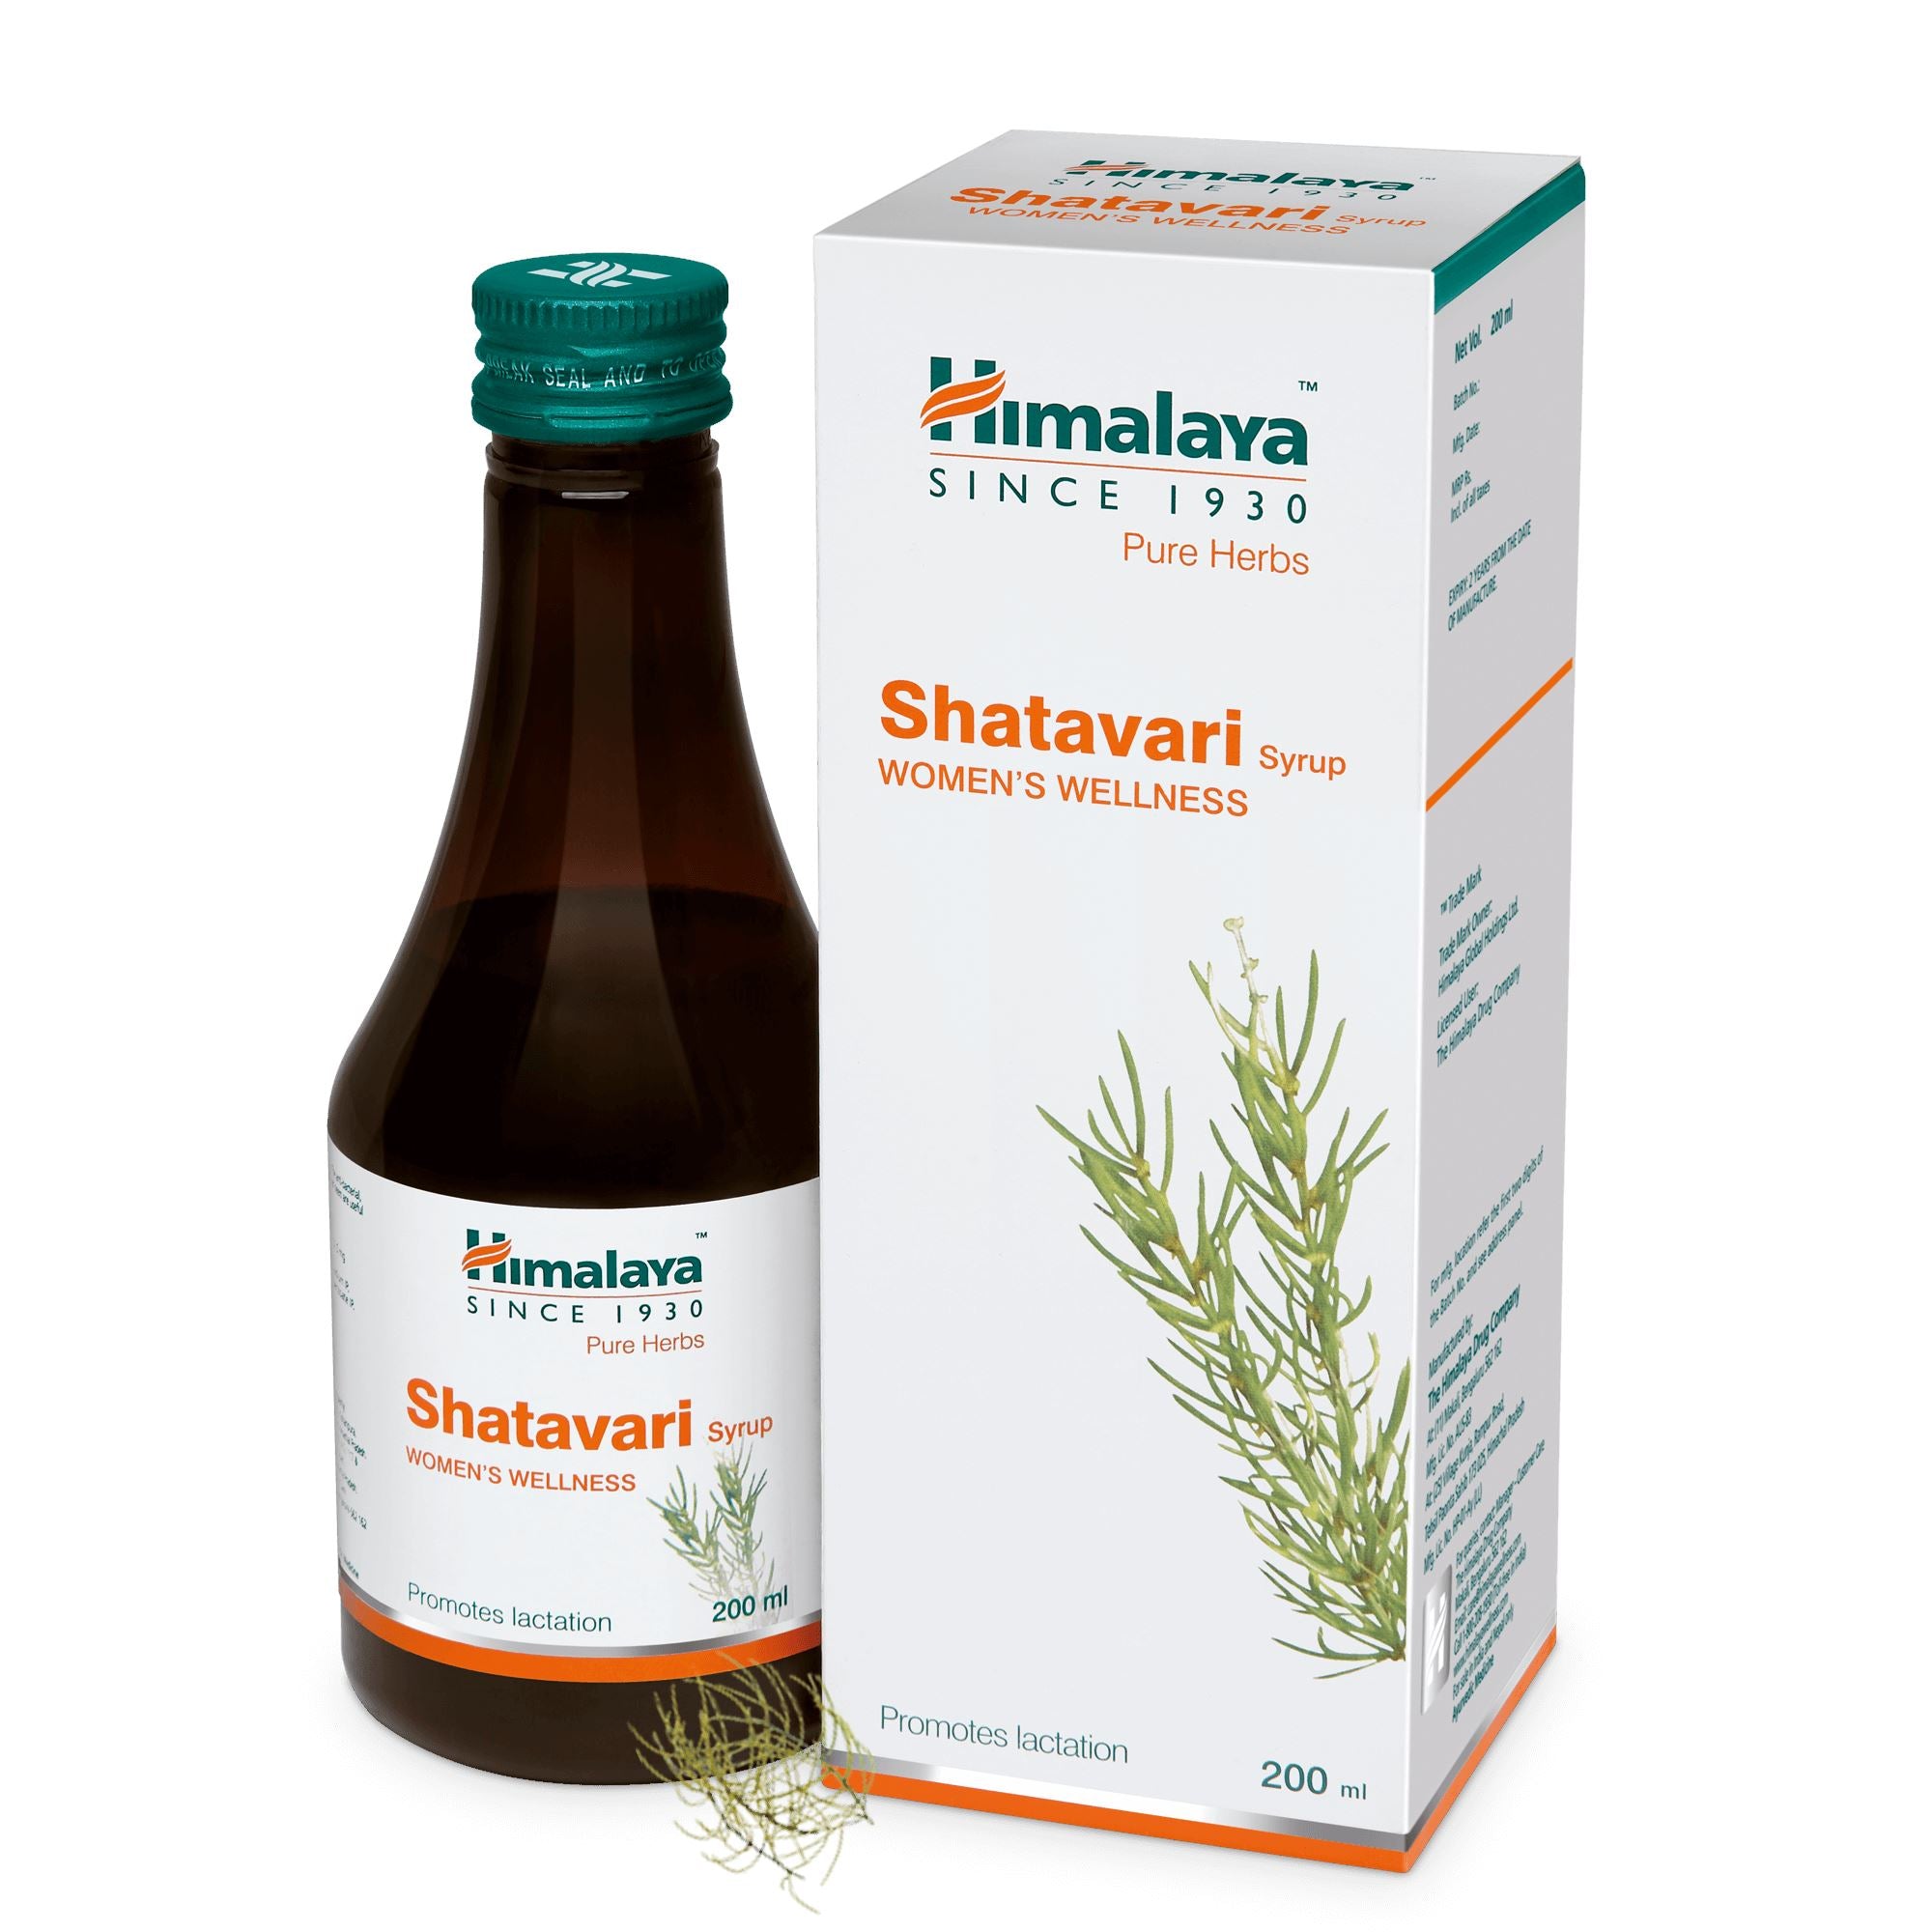 Himalaya Shatavari Syrup - Promotes lactation